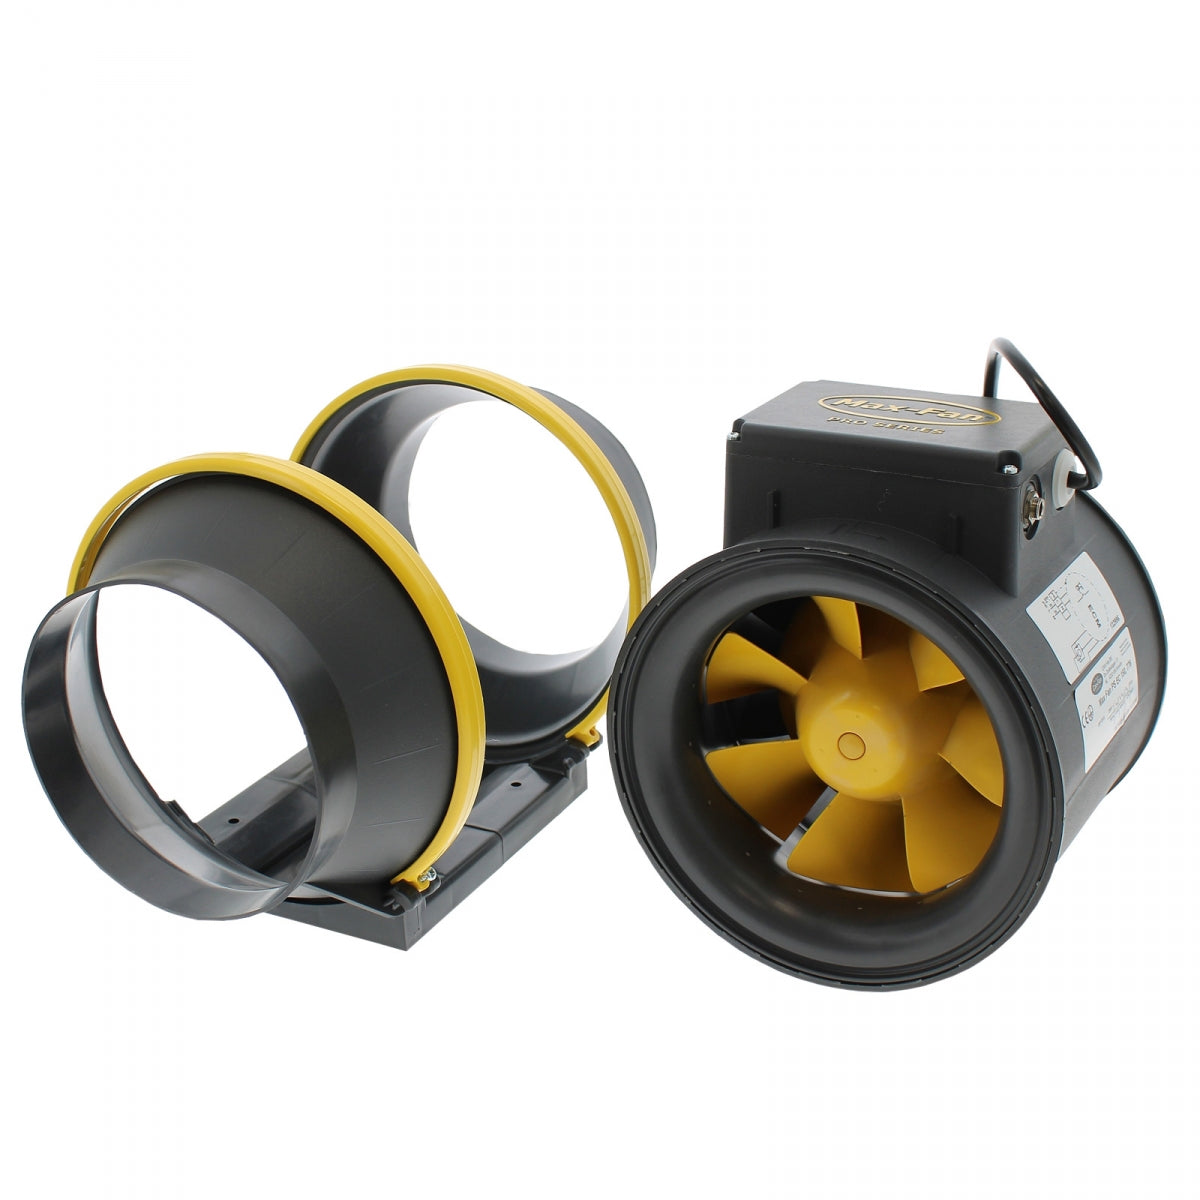 MAX-Fan Pro EC 776 m3/h – 150 mm – Can-Fan